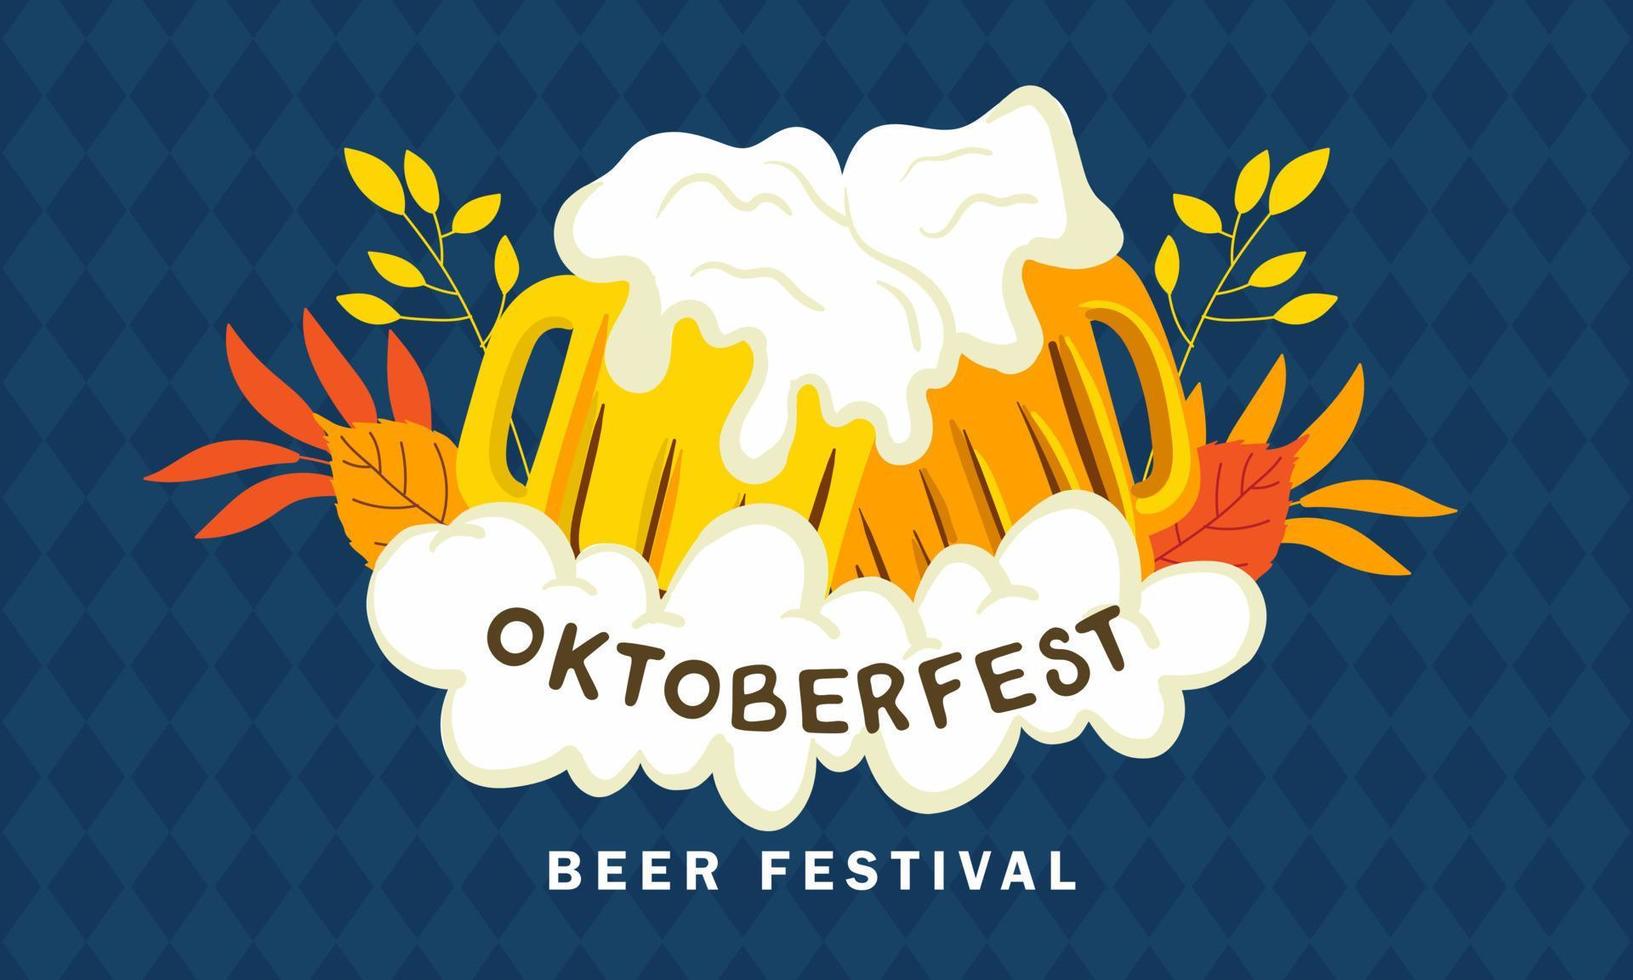 fond de la fête de la bière. bannière de l'événement du festival de la bière oktoberfest. couple, tasse, bière, vecteur